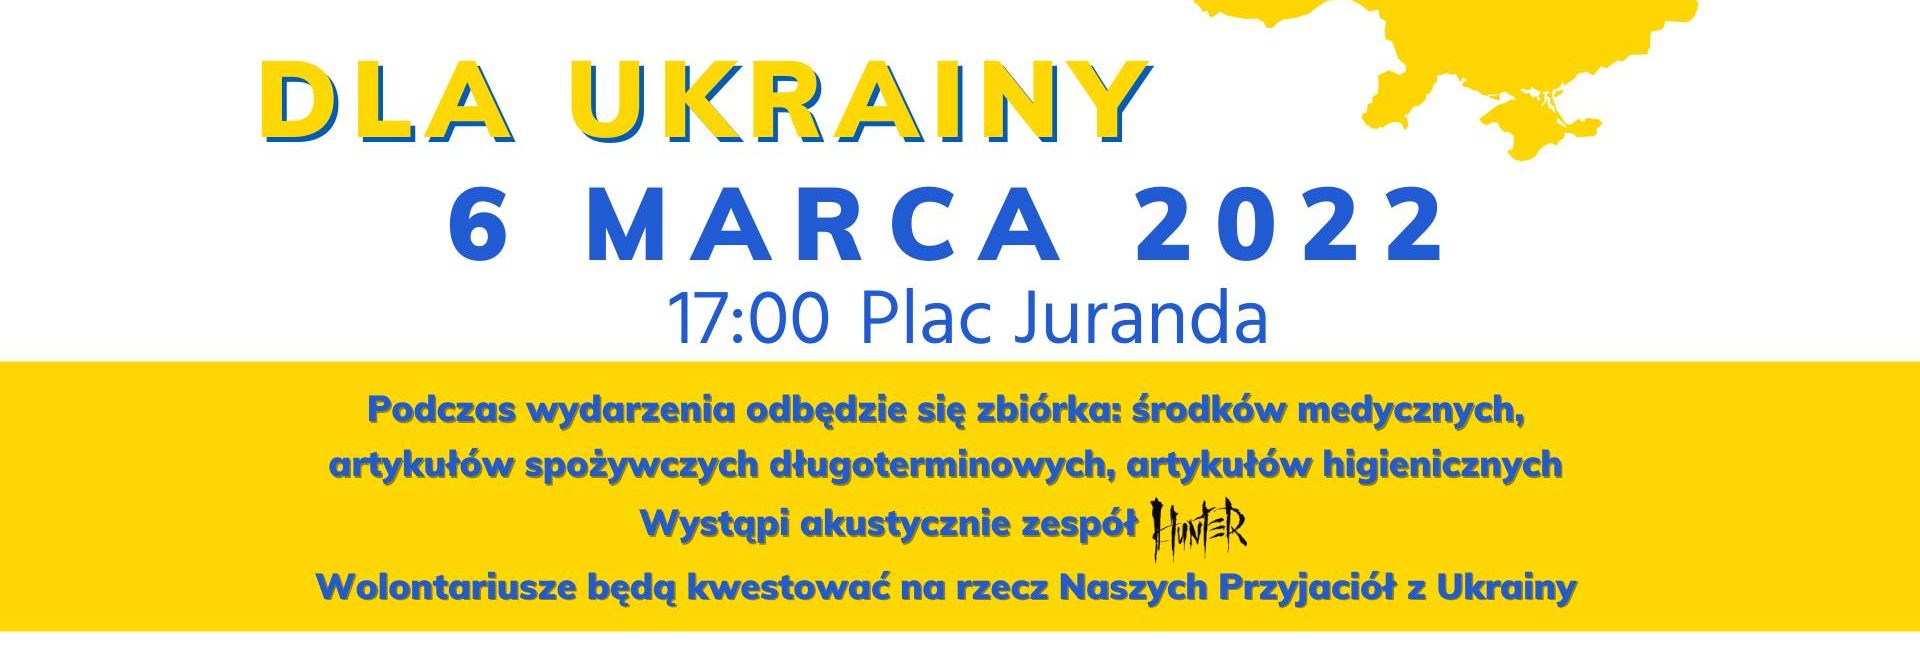 Plakat graficzny zapraszający do Szczytna na Koncert SZCZYTNO DLA UKRAINY 2022.